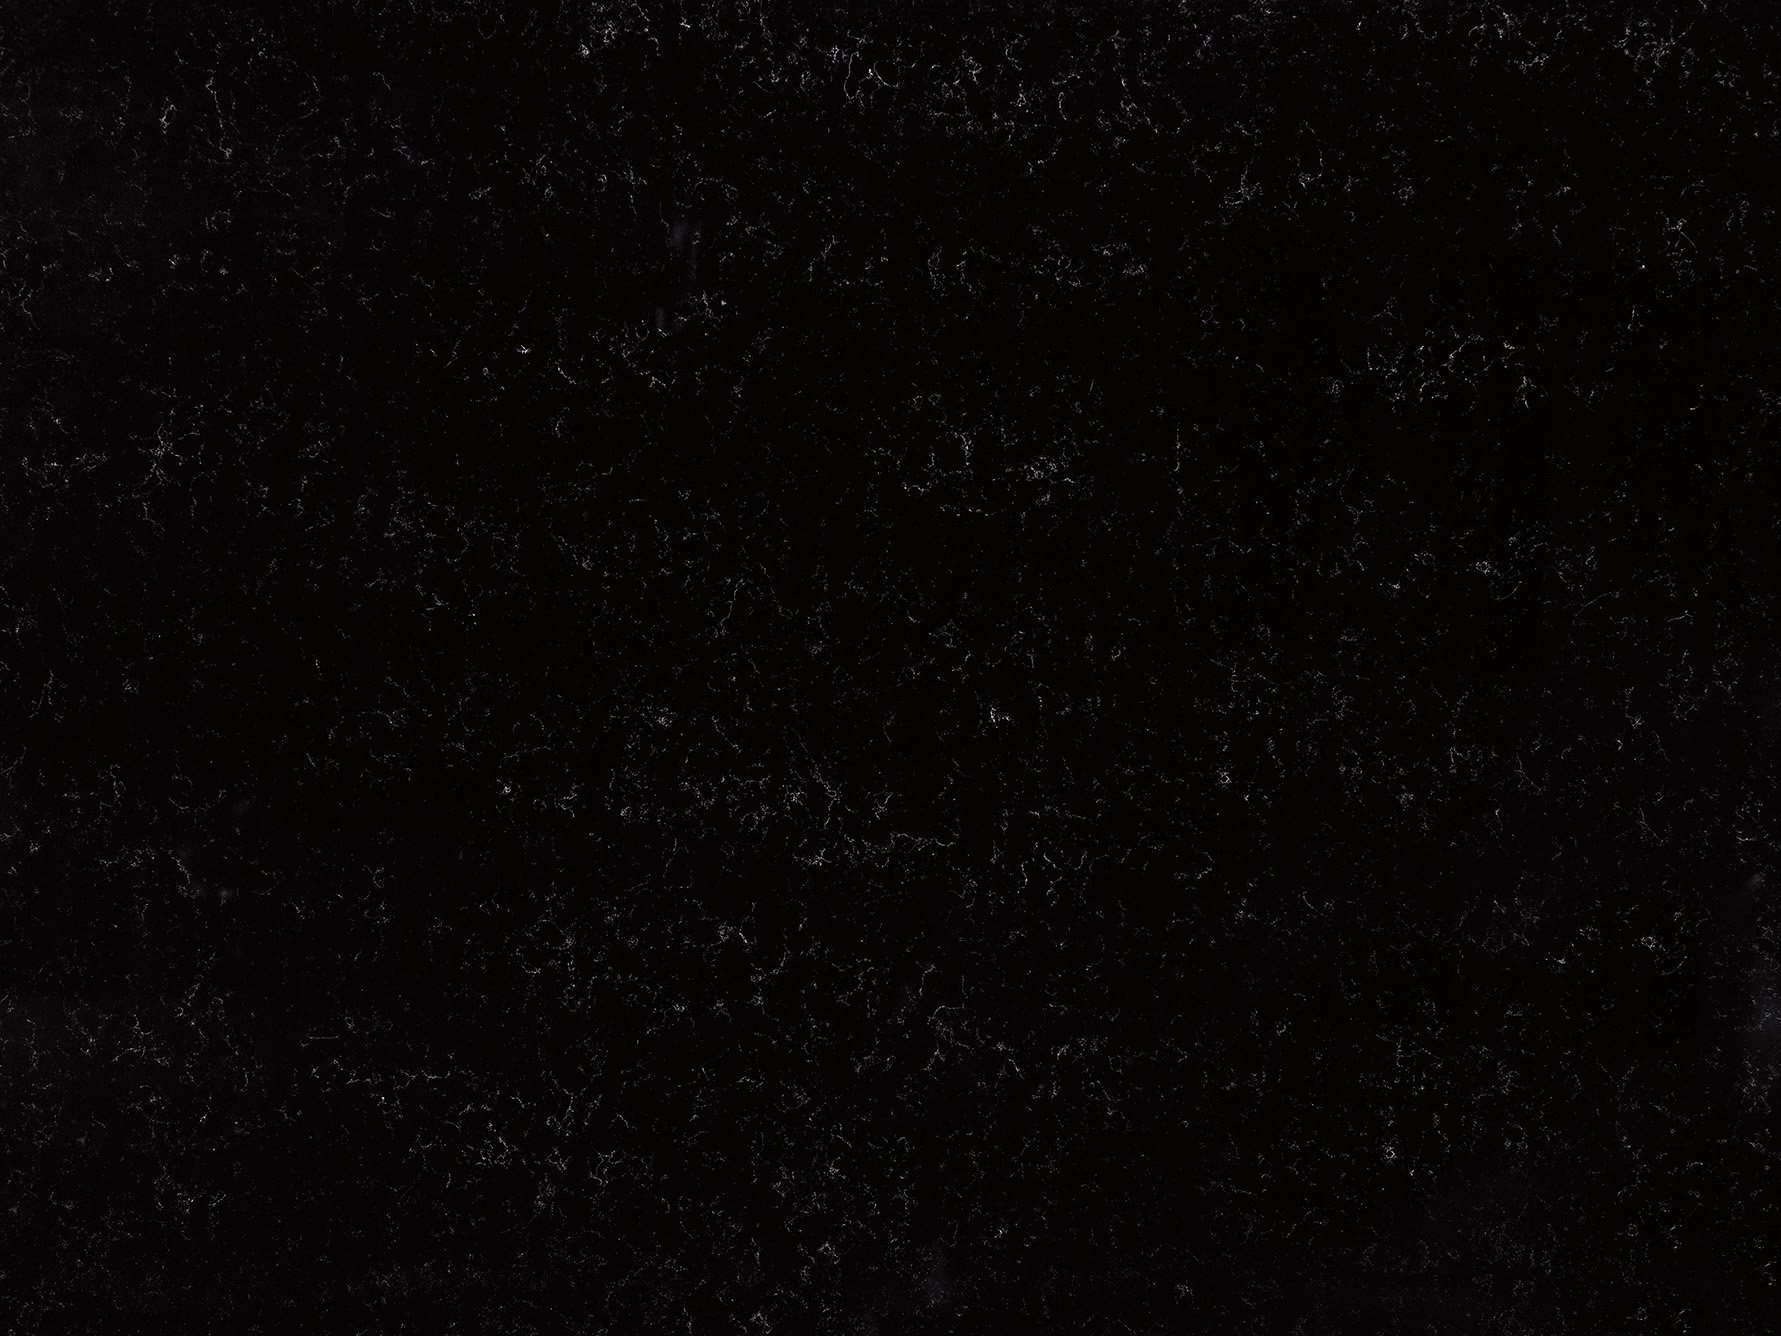 HanStone Quartz Silhouette black quartz countertop surface full slab